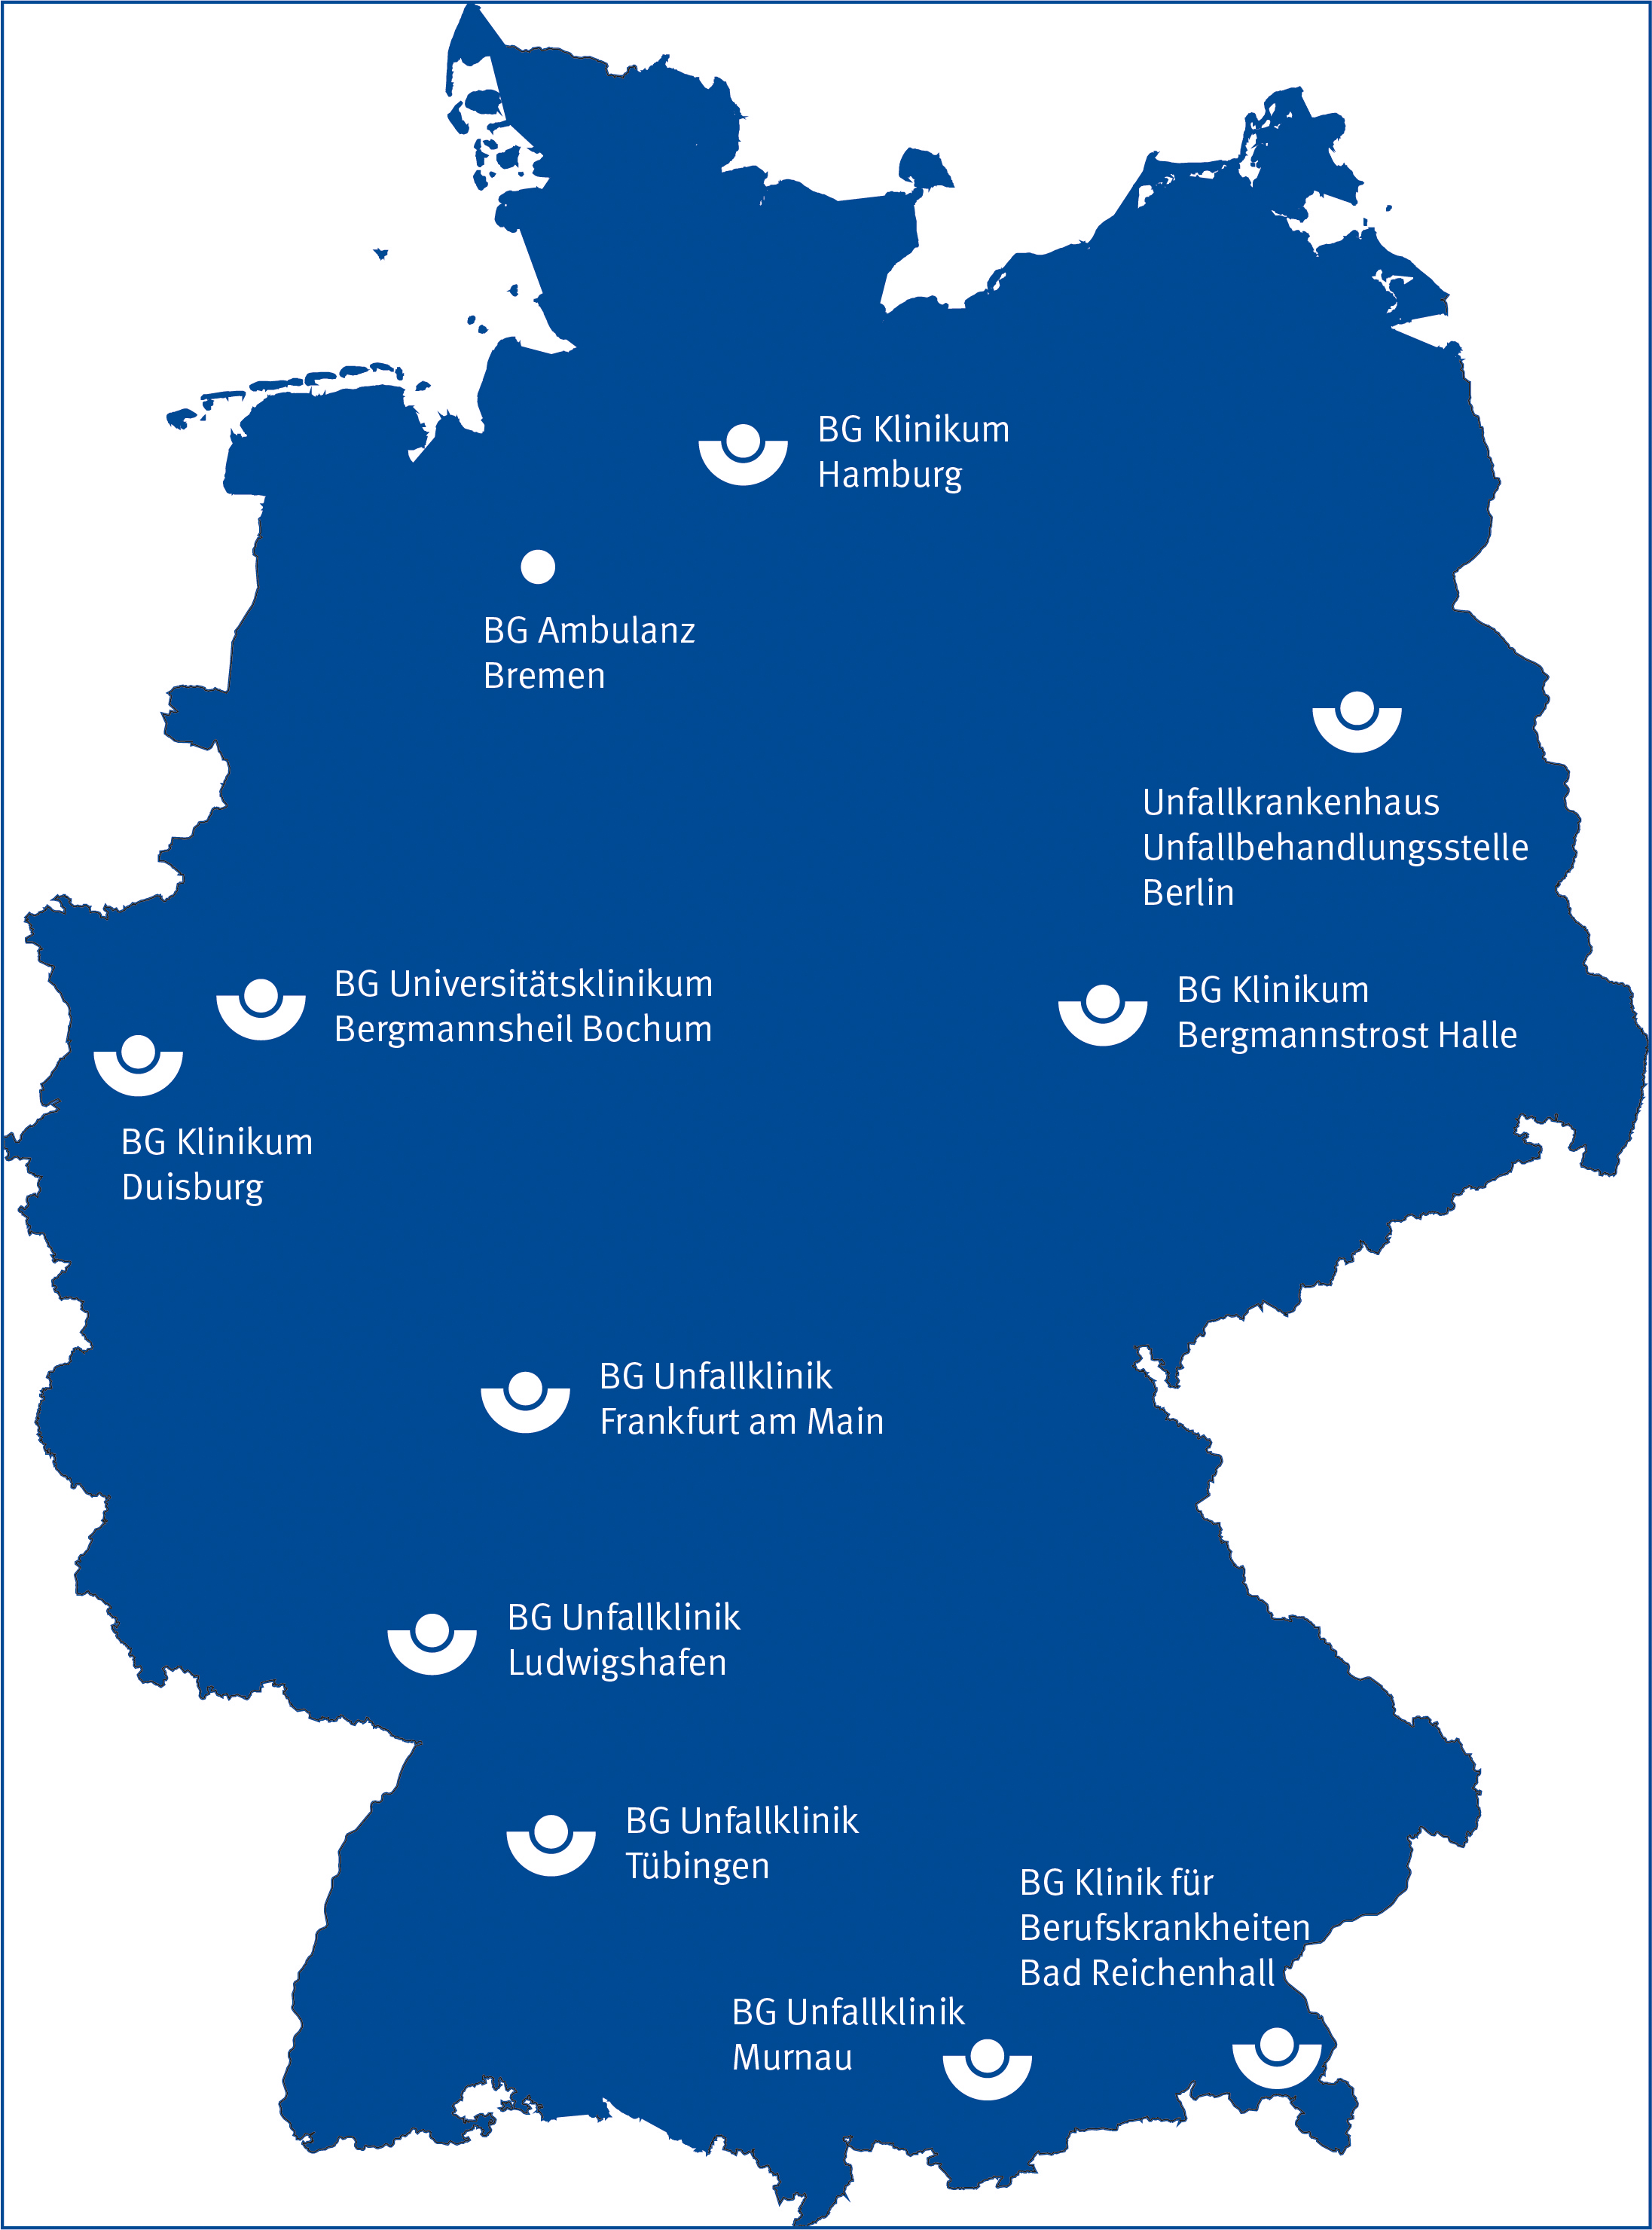 Deutschlandkarte mit blauer Hintergrundfarbe. Die Standorte der BG Kliniken sind mit der weißen BG-Schüssel eingezeichnet.